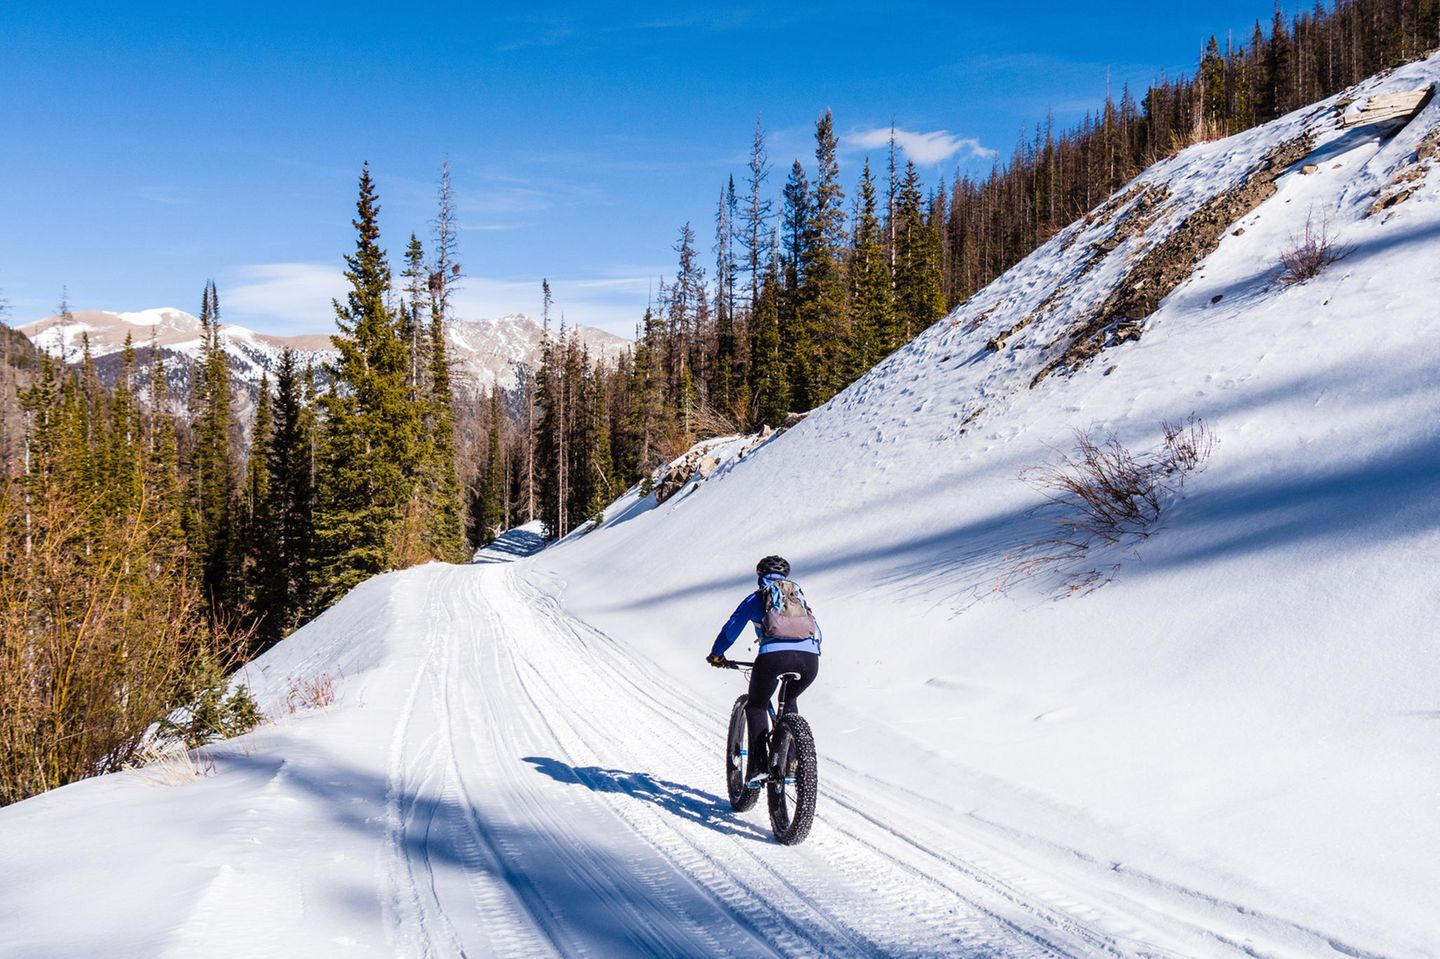 Fatbike: Radfahren im Schnee - so funktioniert's! - [GEO]